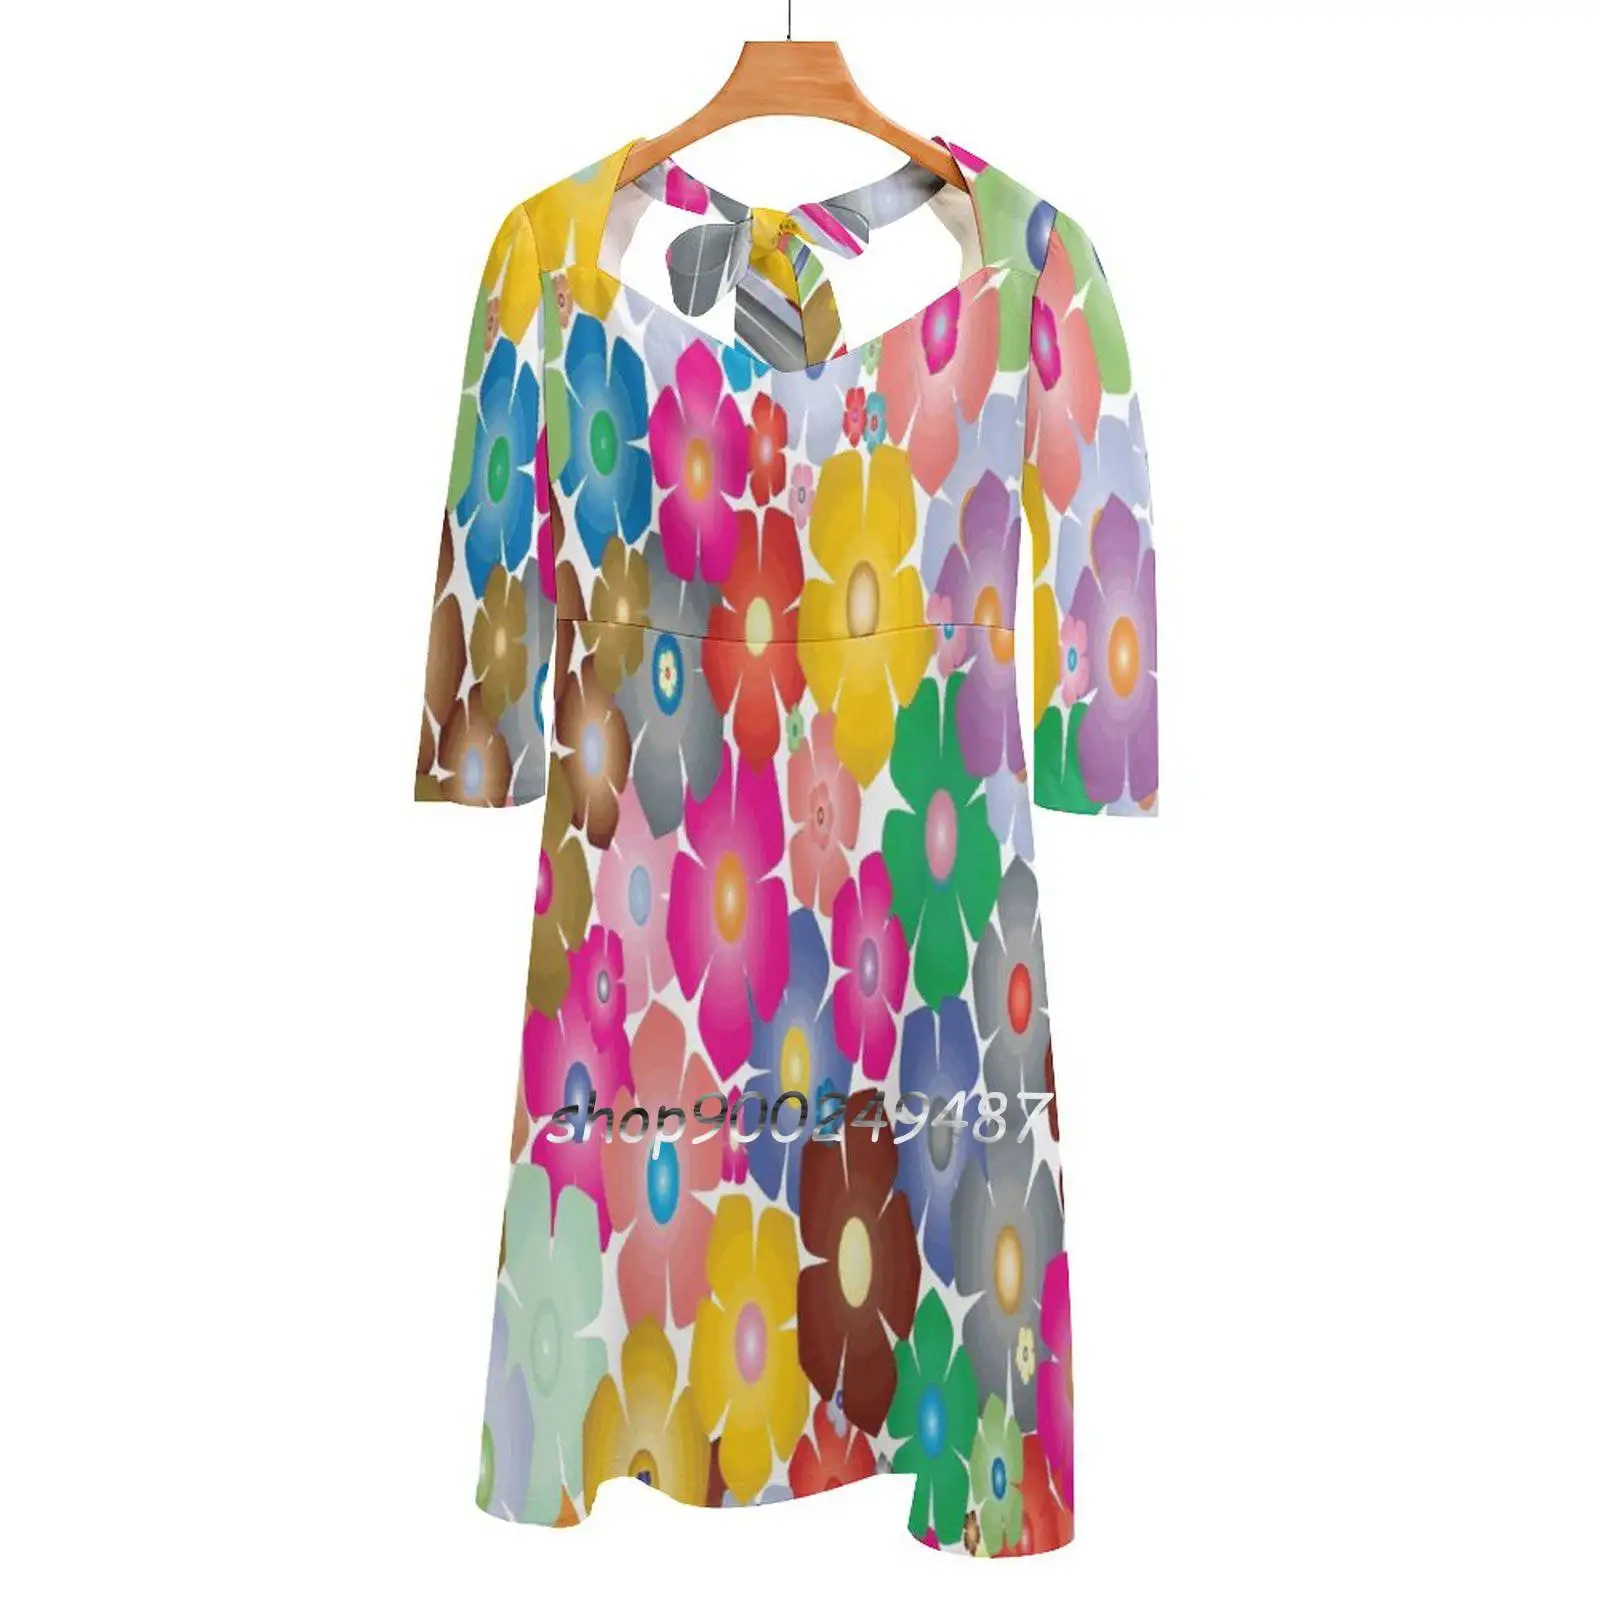 

Расклешенное платье с цветочным принтом Брюса эшмана Бейкера, модное дизайнерское платье большого размера, свободное платье с абстрактным принтом Брюса эшмана Бейкера